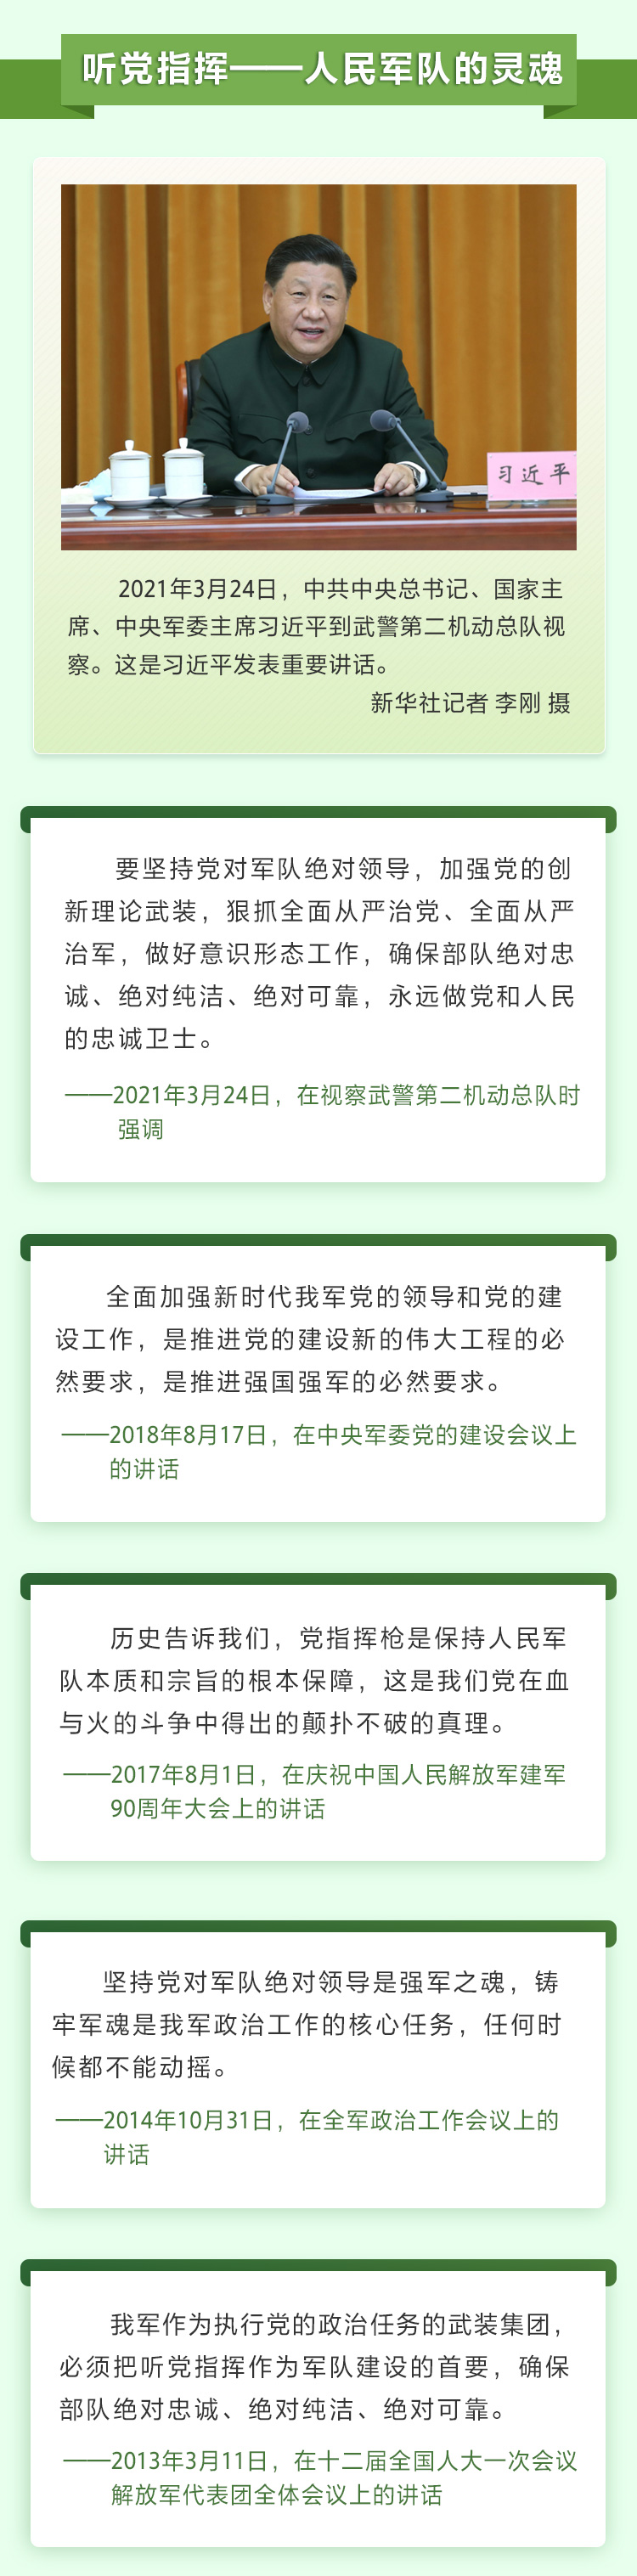 习近平谈军队建设2 人民网-中国共产党新闻网.jpg